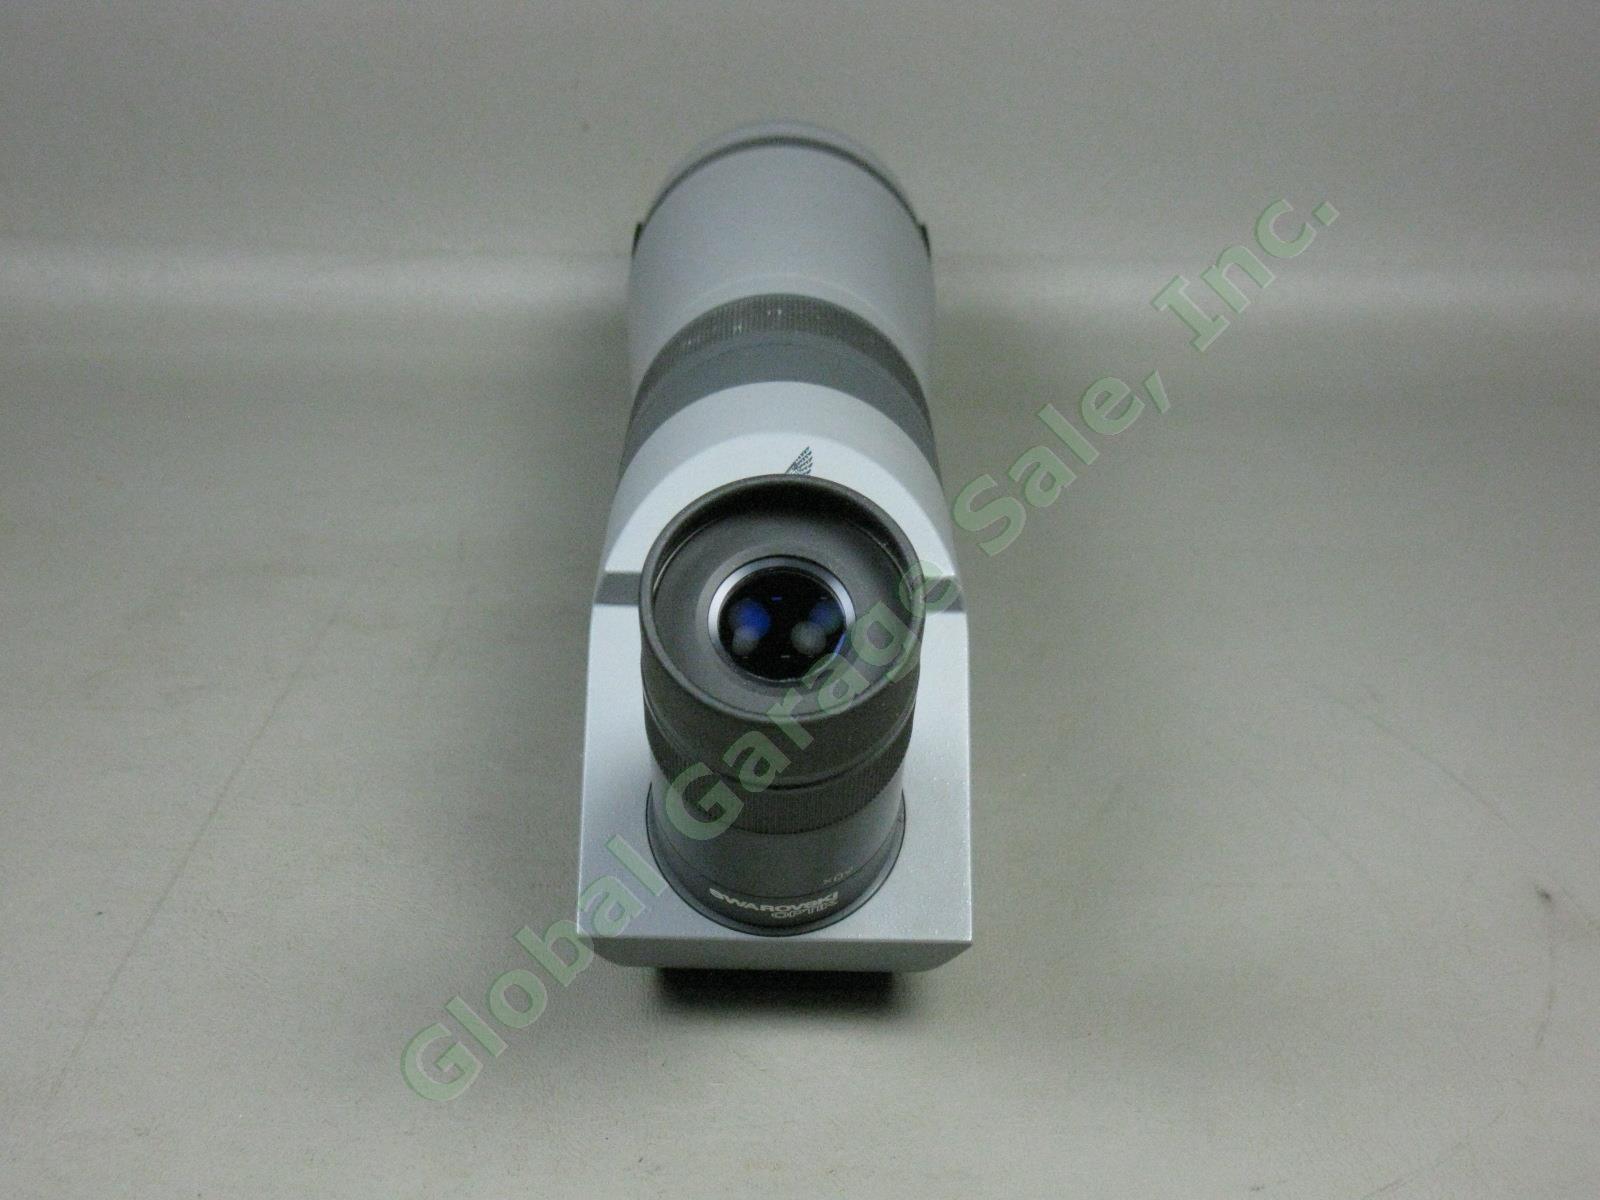 Swarovski Optik Habicht AT80 Spotting Scope w/20-60x Eyepiece +Box One Owner NR! 6